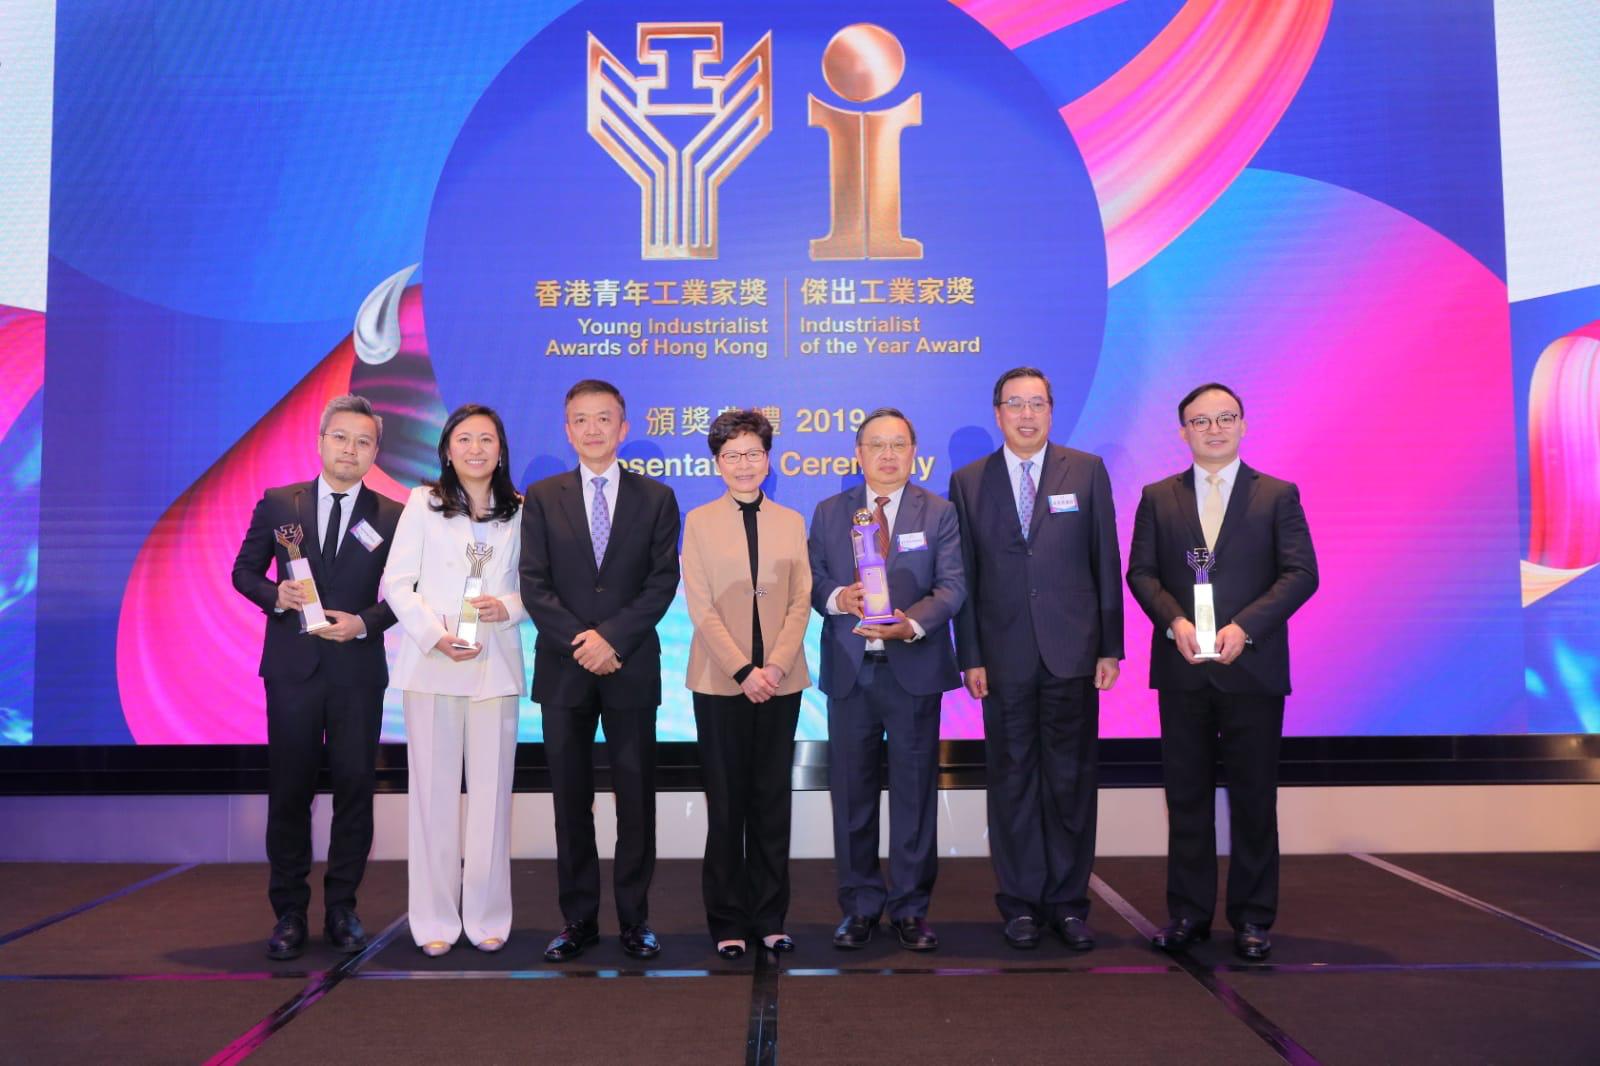 獲獎者和香港特首林鄭月娥、立法會主席梁君彥、香港工業總會主席葉中賢合照